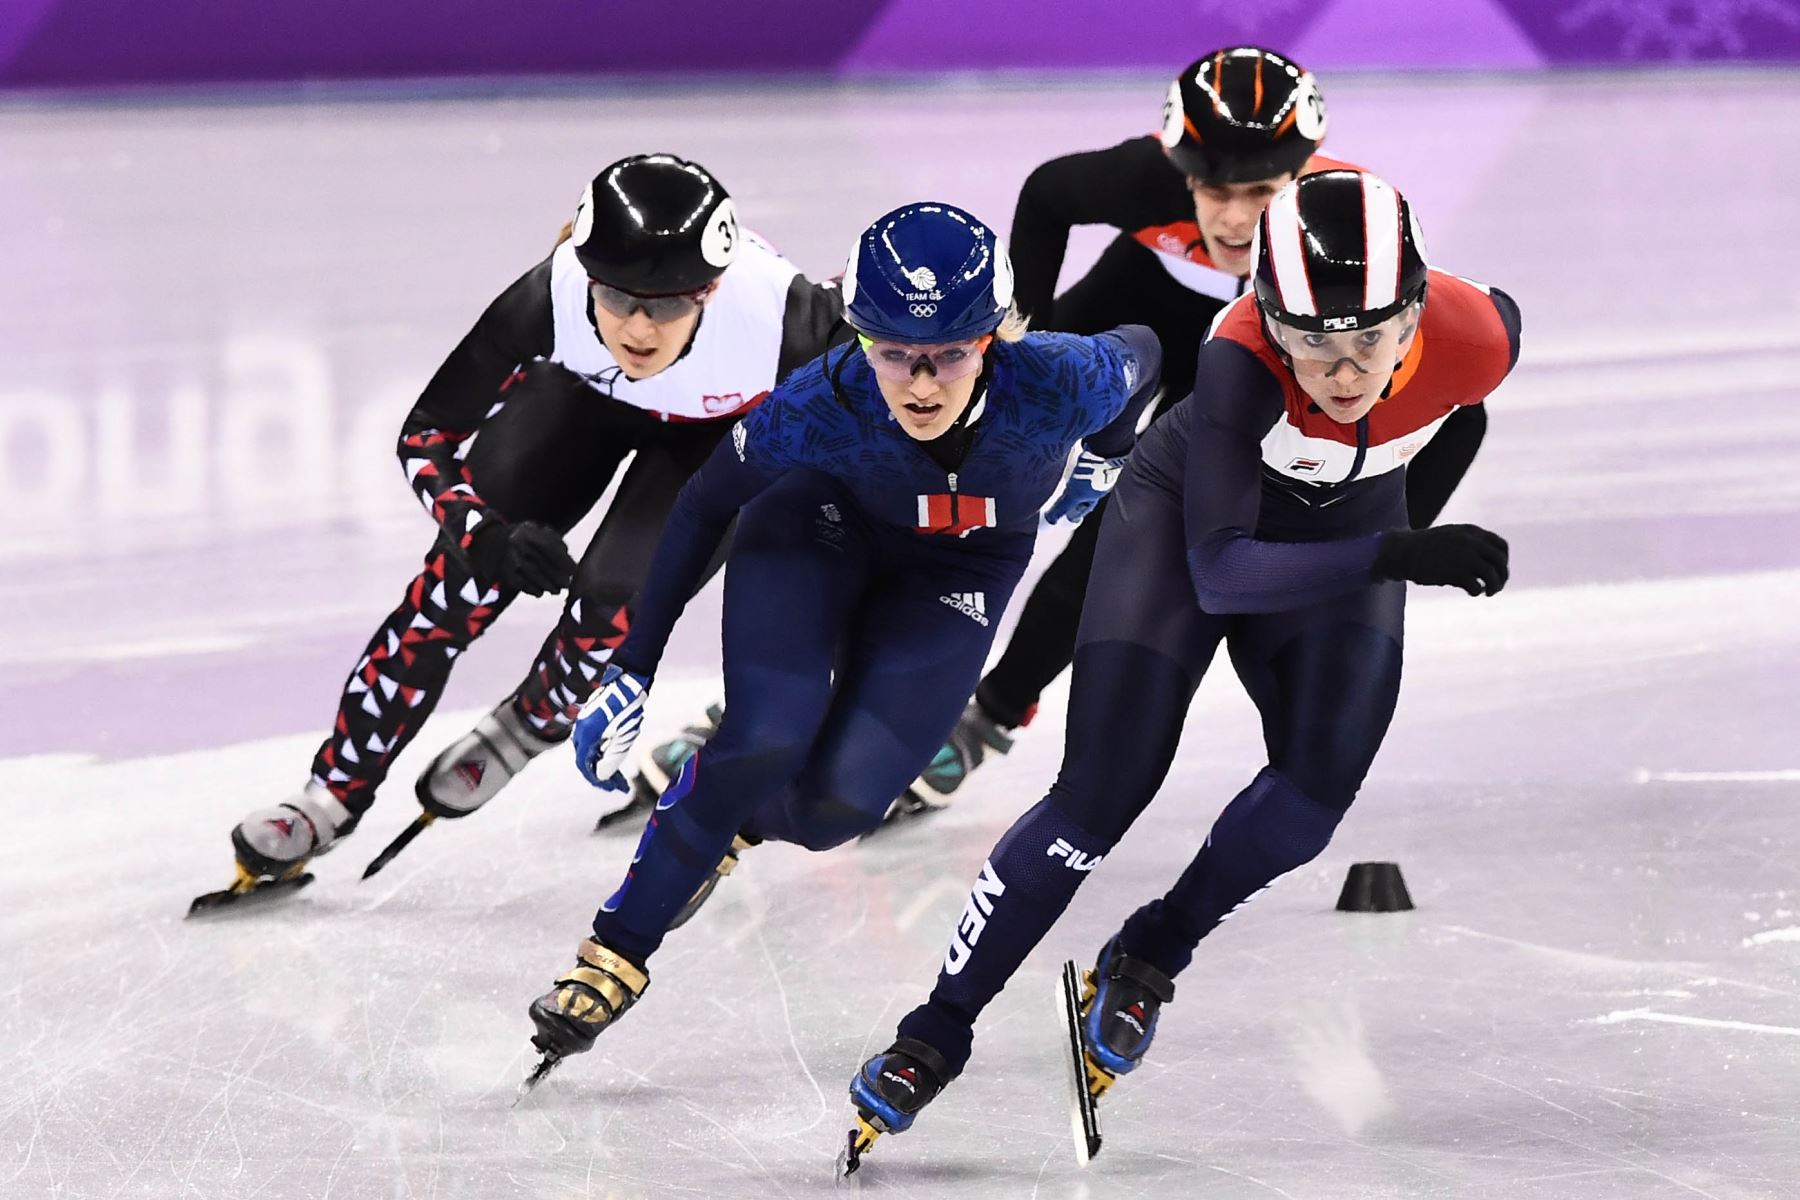 La británica Elise Christie compite en patinaje de velocidad de 1,000 metros en los Juegos Olímpicos de Invierno Pyeongchang 2018. Foto: AFP